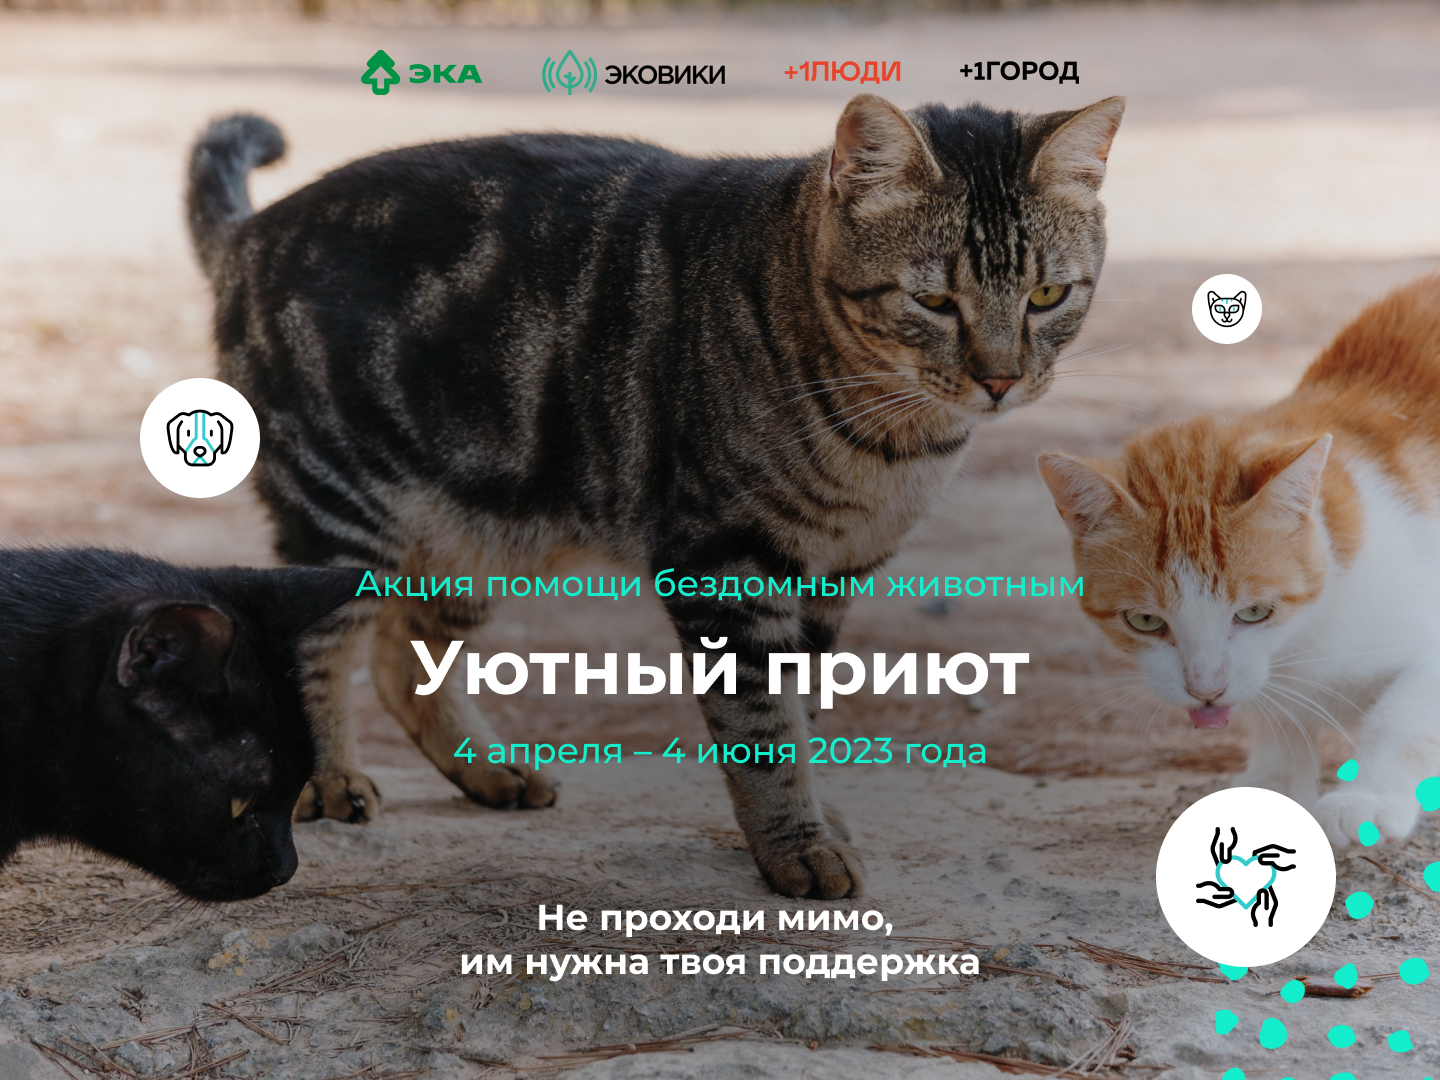 Приютам – уют: в Вологодской области стартовала акция помощи бездомным животным.